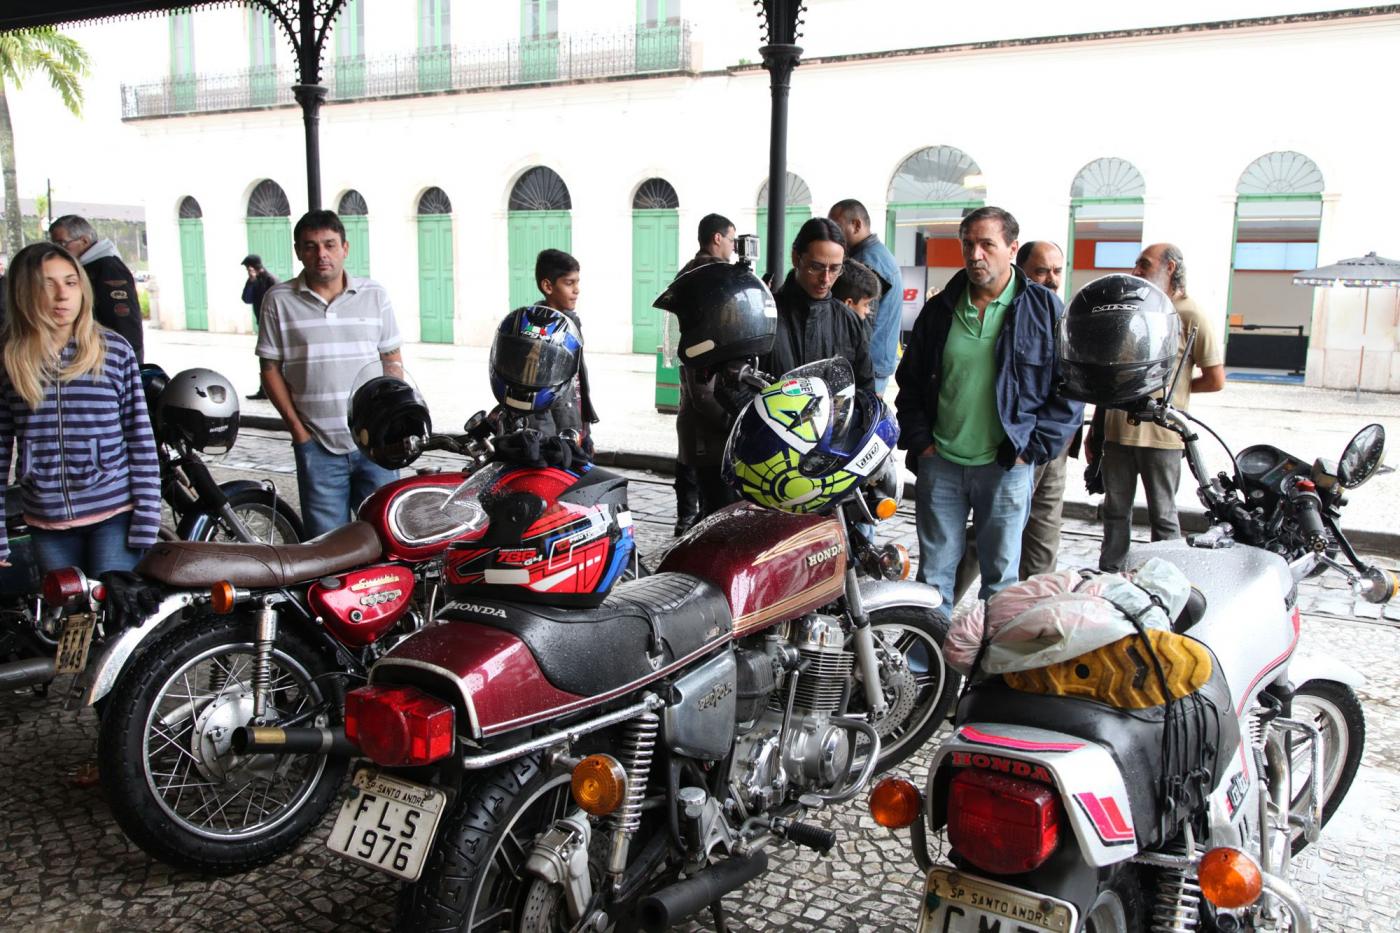 Motos raras em exposição na rua sob marquise. Público as observa